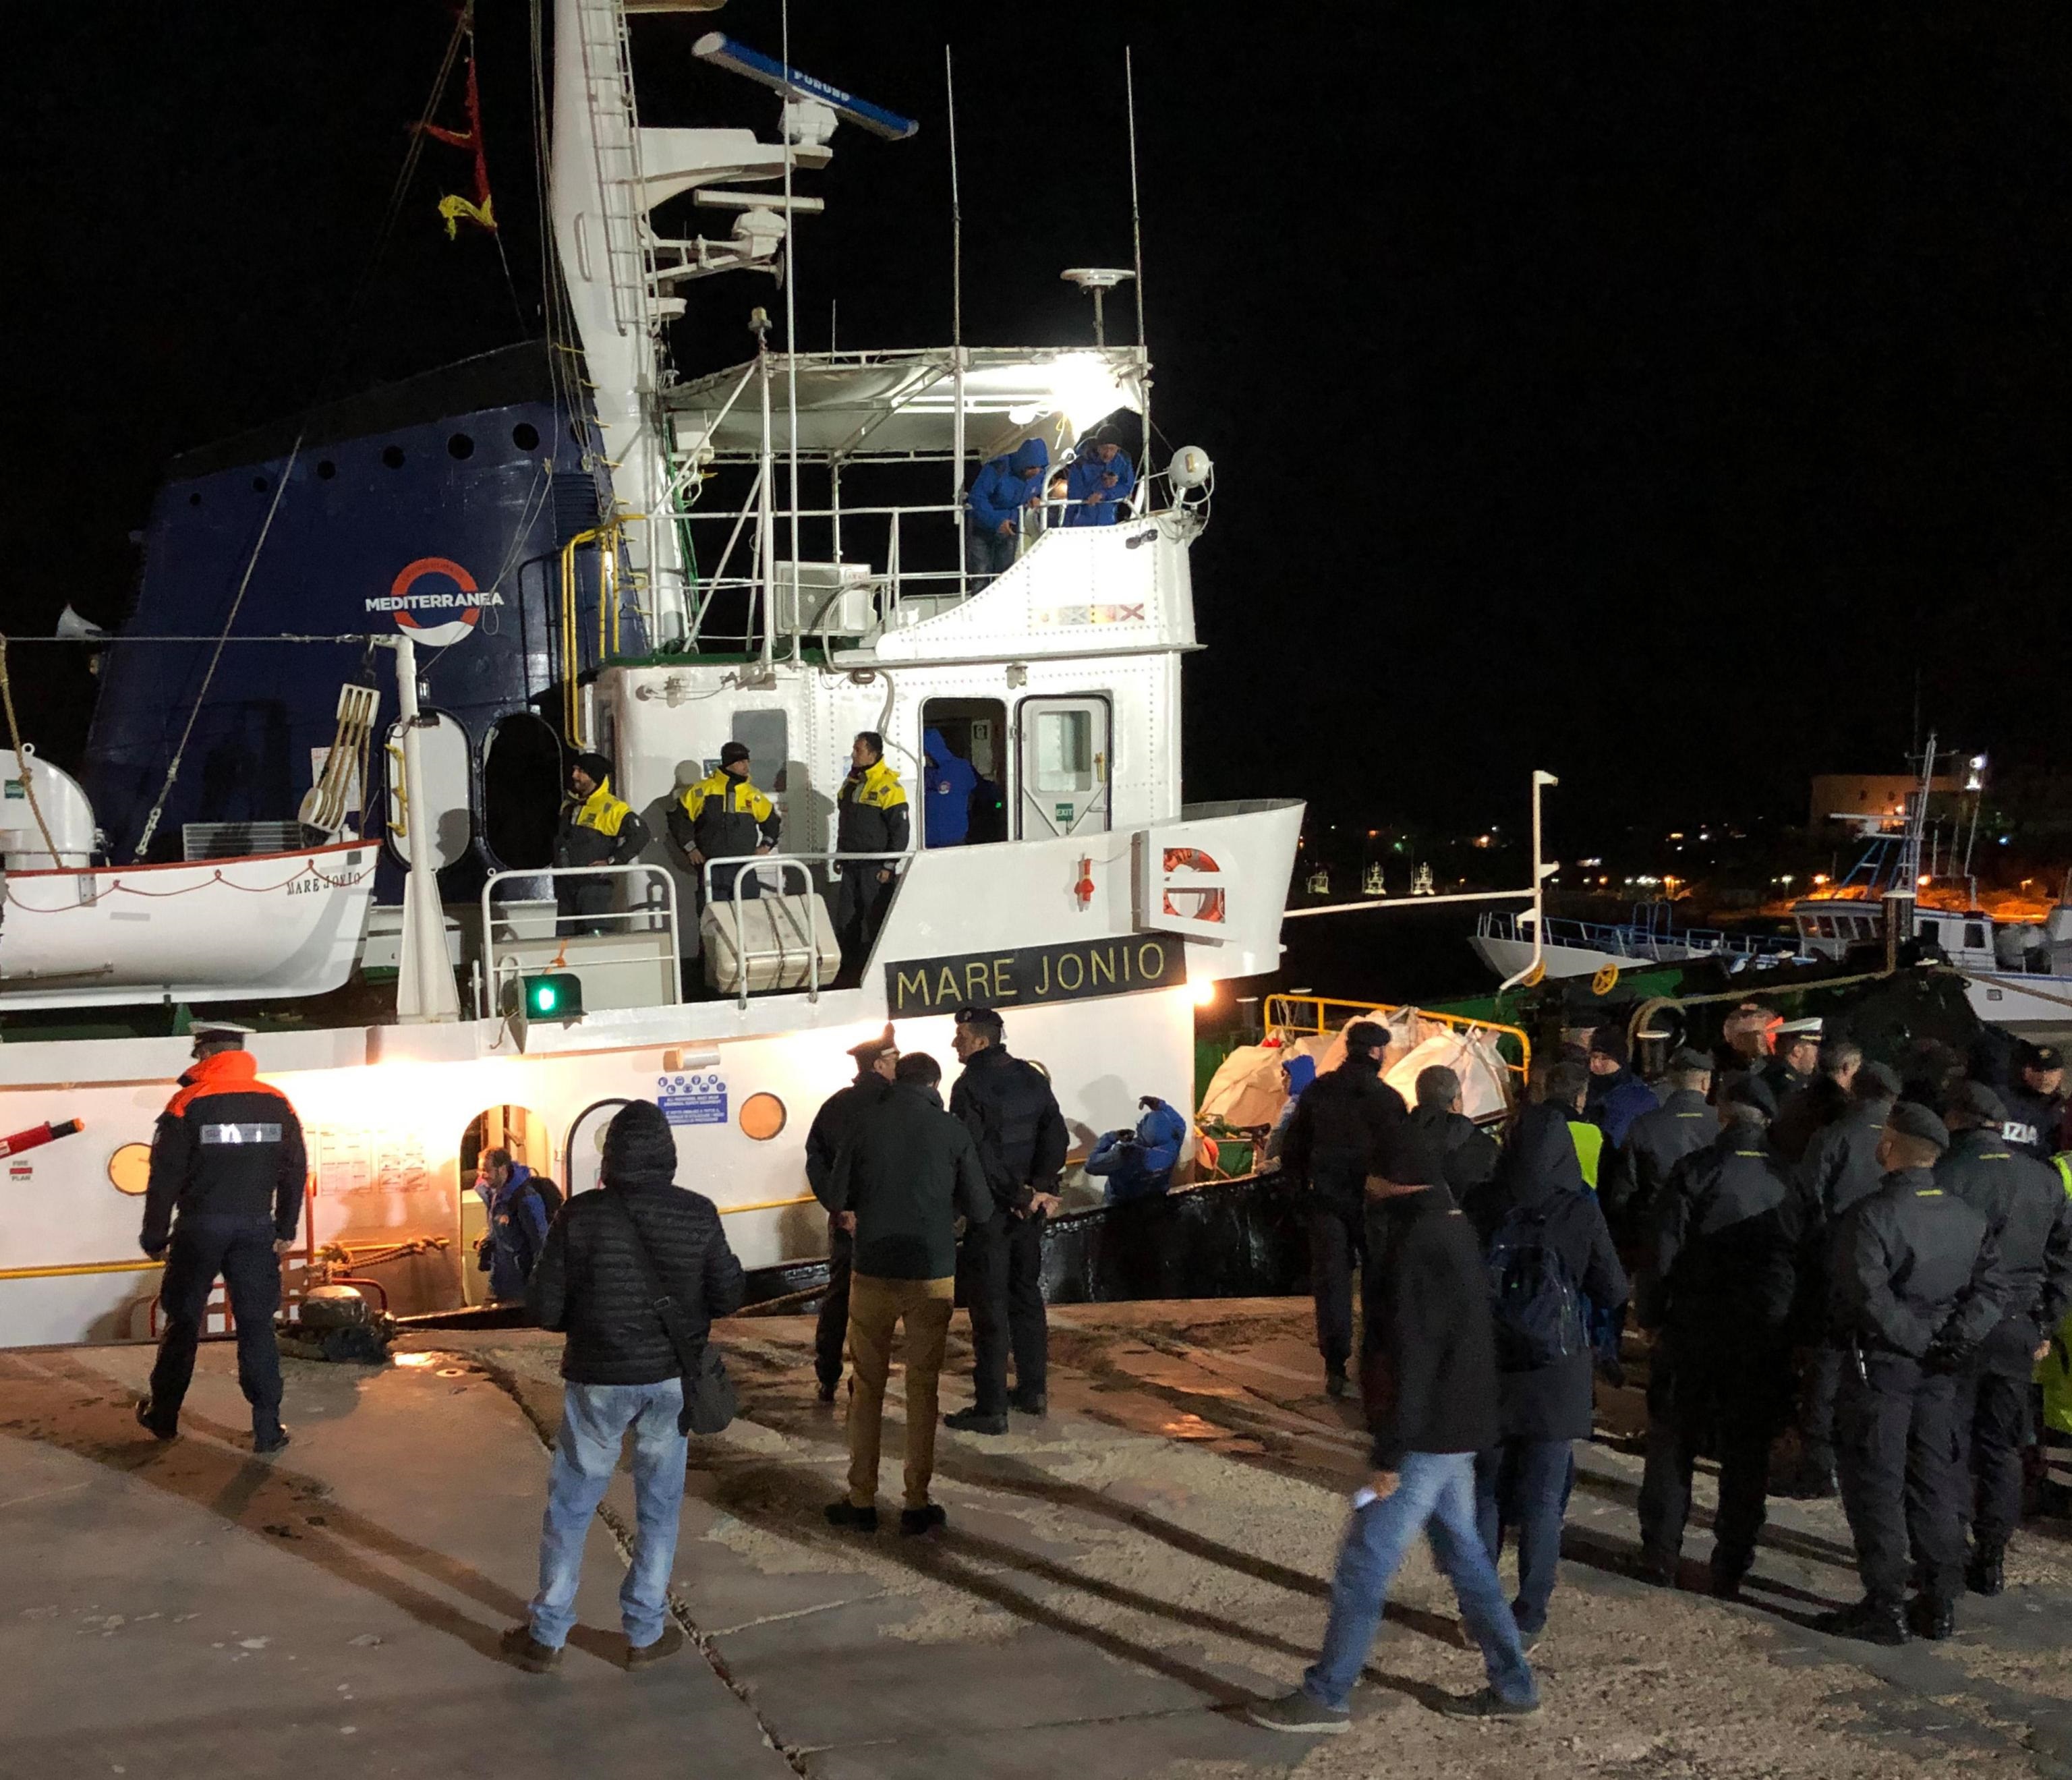 Dopo aver attraccato, si avvicinano alla Mare Jonio alcune Forze dell'ordine tra cui le Fiamme gialle che ieri avevano intimato l'alt all'imbarcazione diretta a Lampedusa